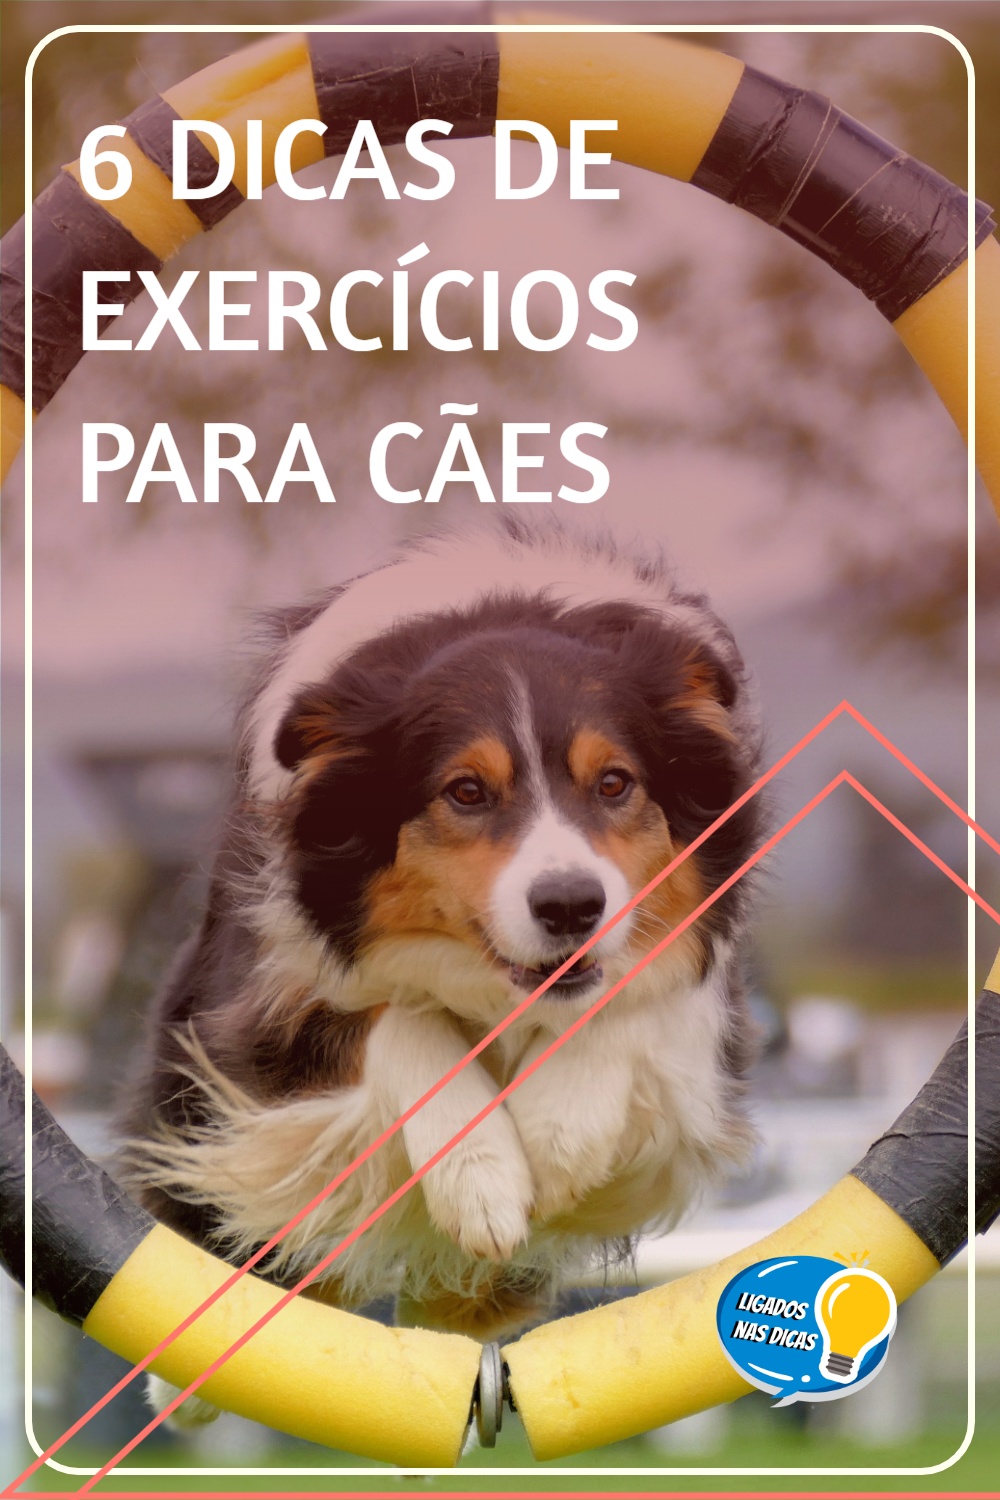 Exercícios para cães